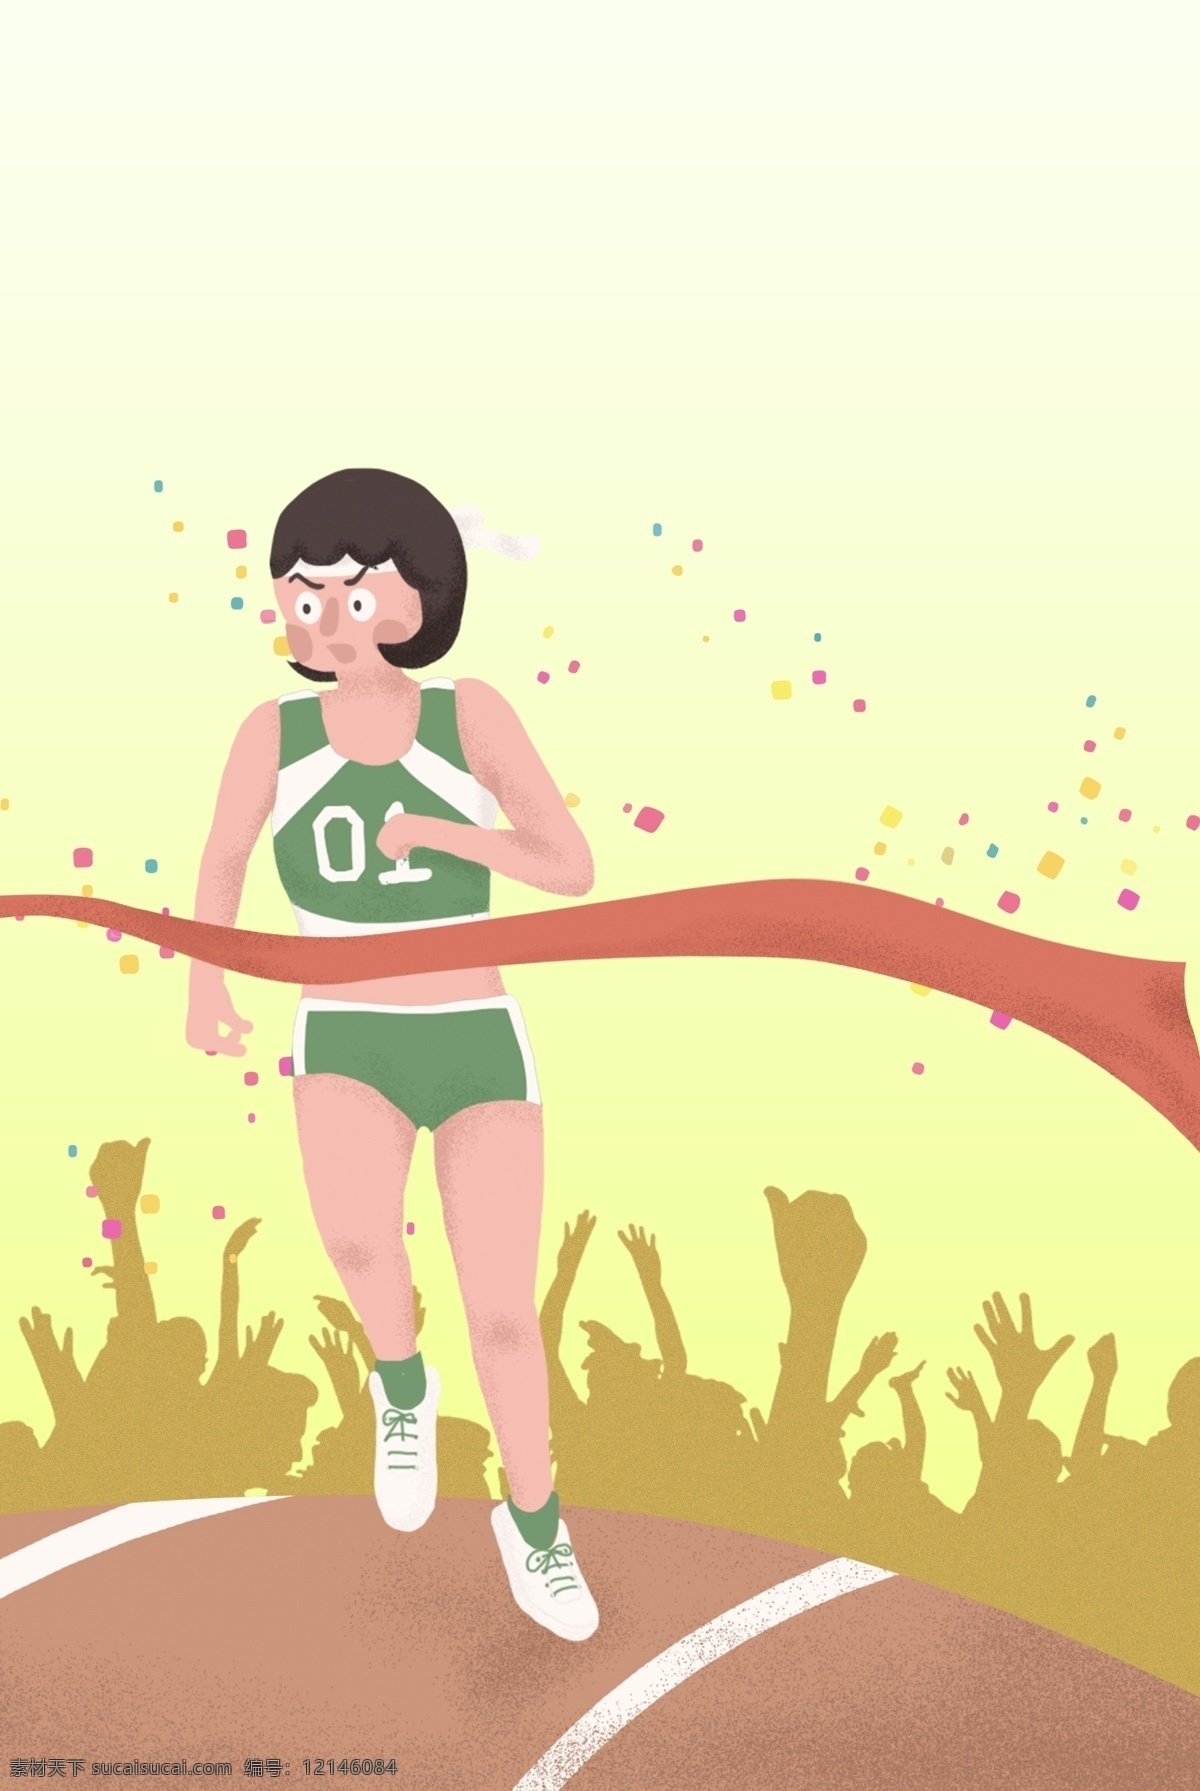 秋季 学校 运动会 长跑 比赛 手绘 海报 背景 喝彩 观众 跑道 女孩 获胜 冠军 卡通